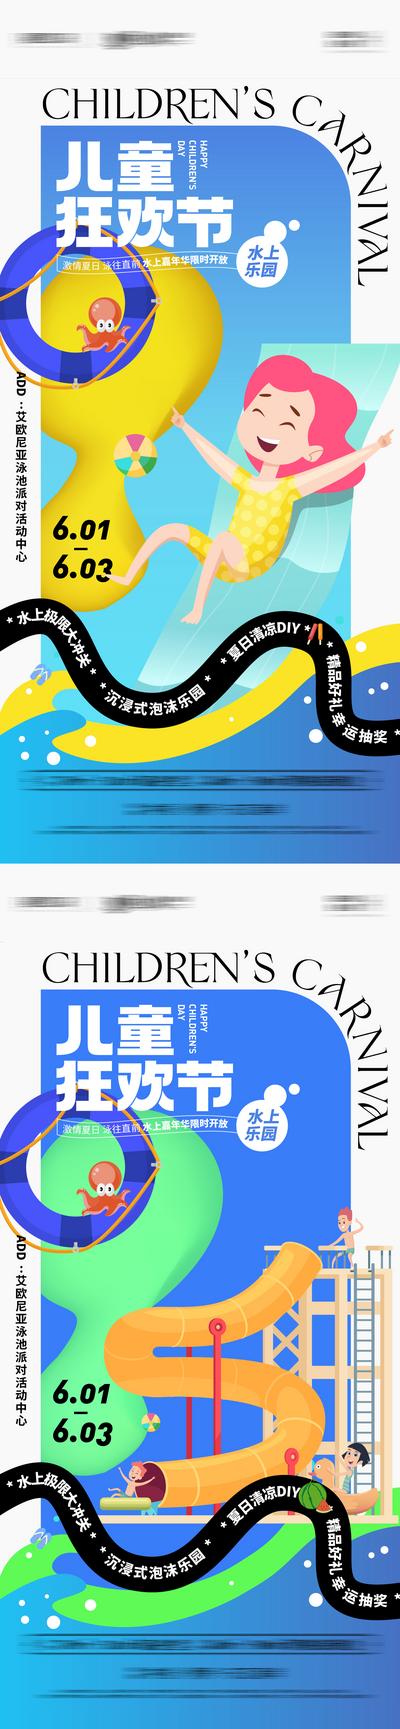 南门网 海报 地产 公历节日 六一 儿童节 水上乐园 嘉年华 滑梯 游泳 系列